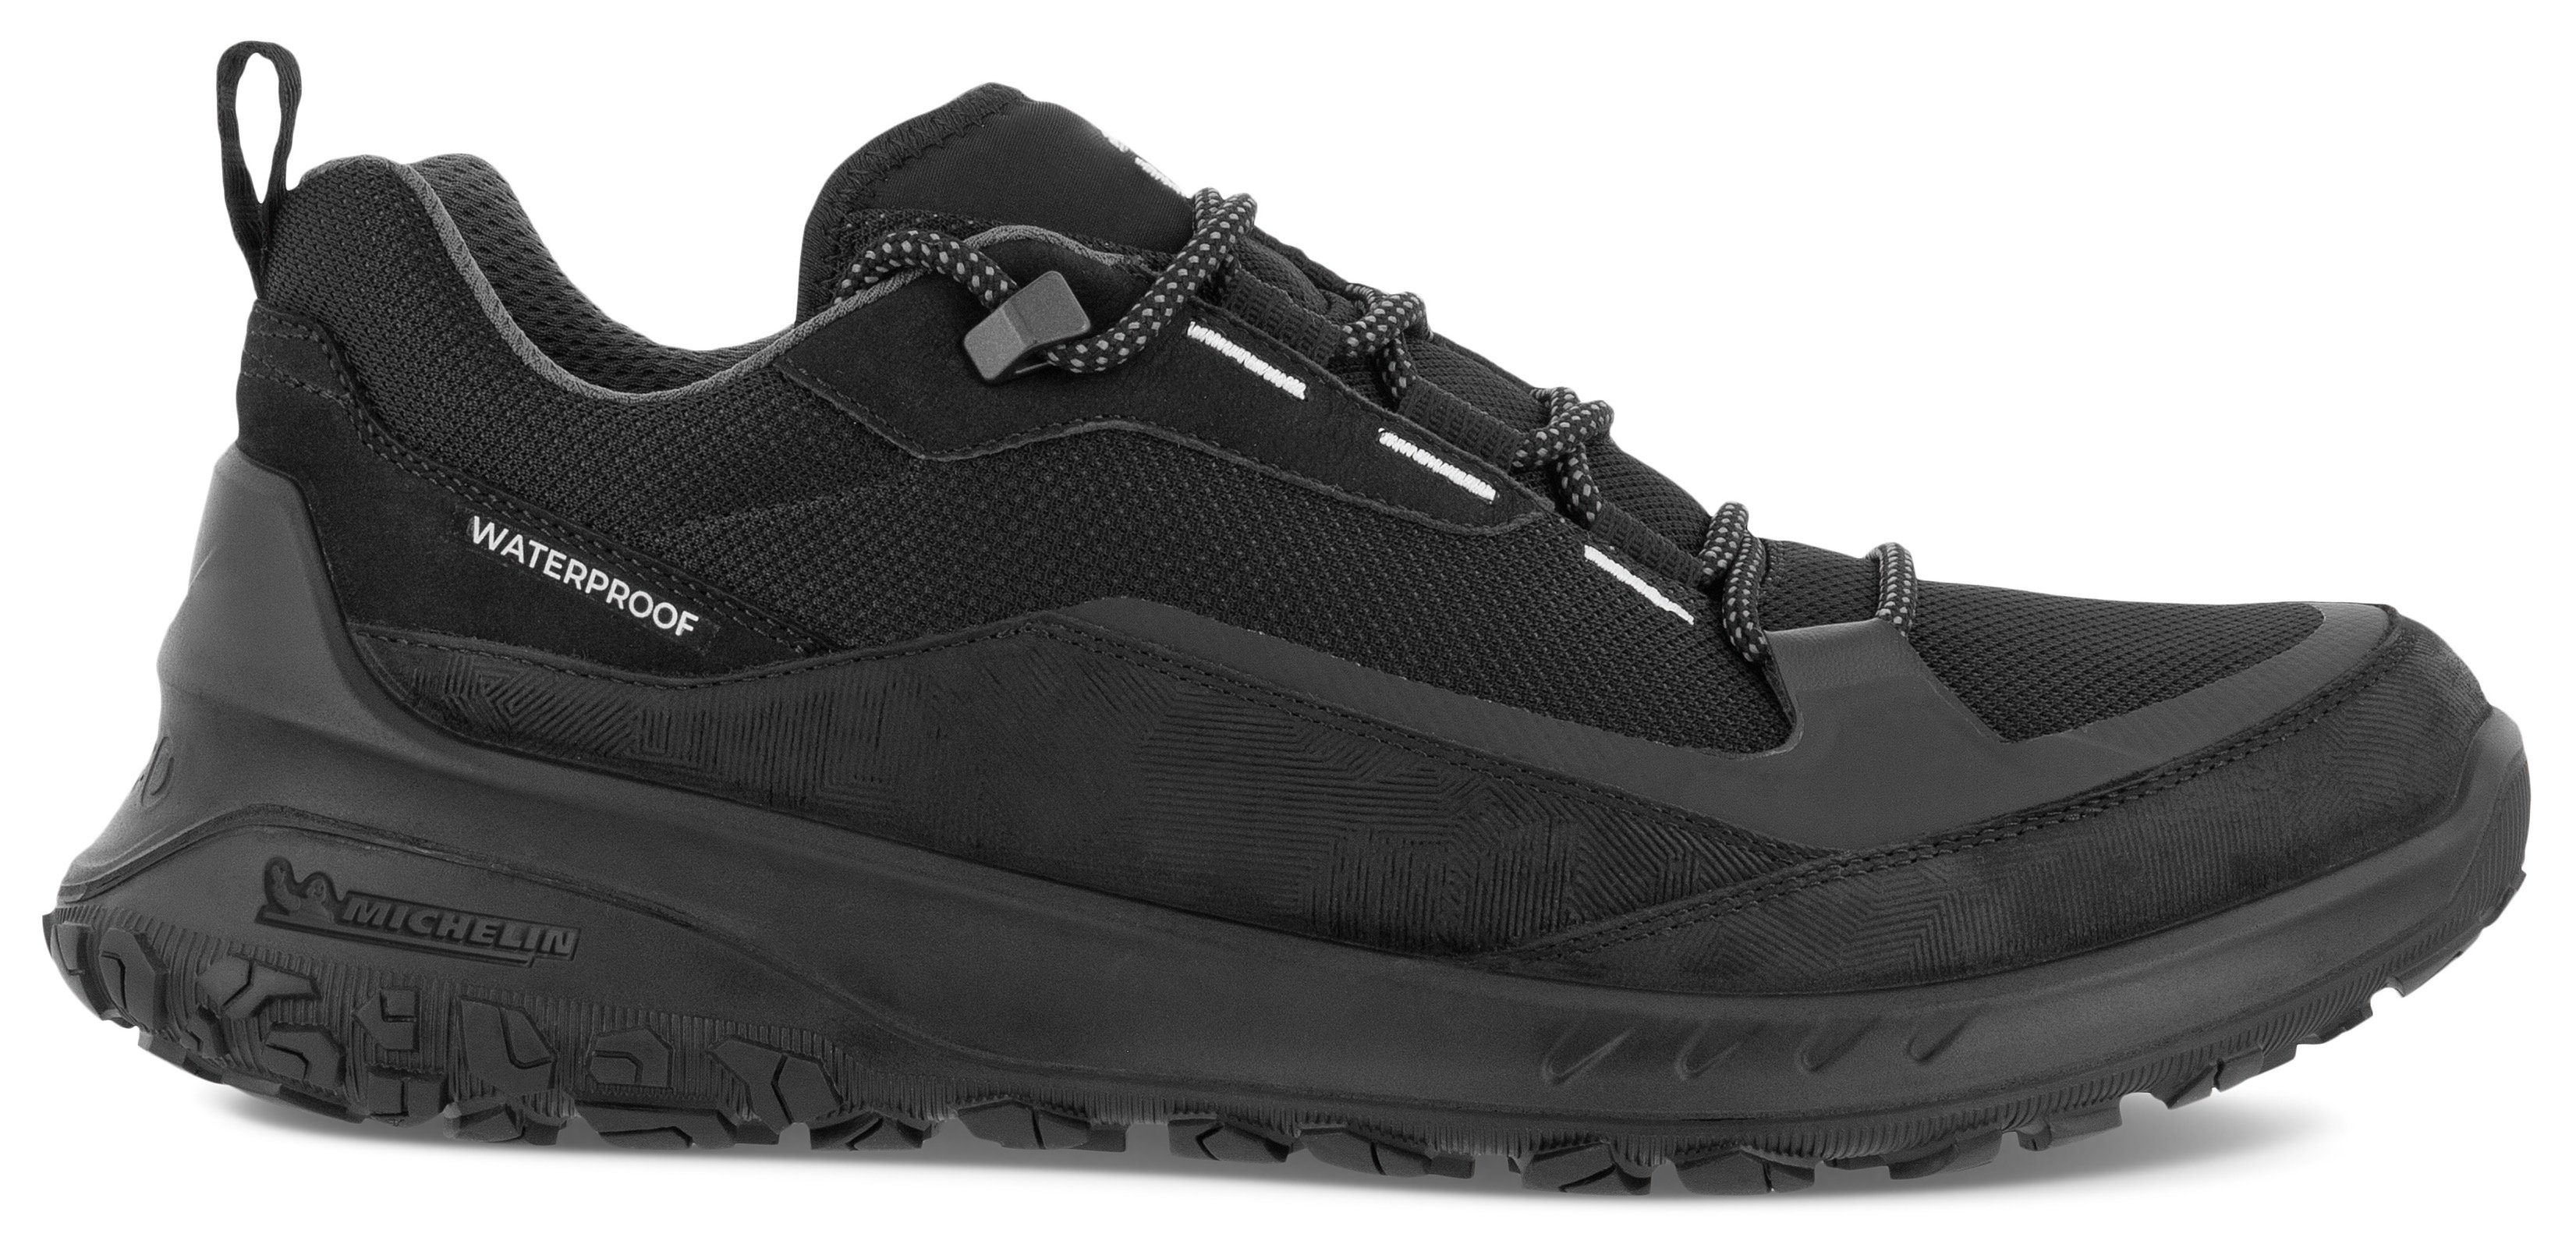 Sneaker schwarz sportive Ecco Michelin-Technologie mit Laufsohle ULT-TRN M